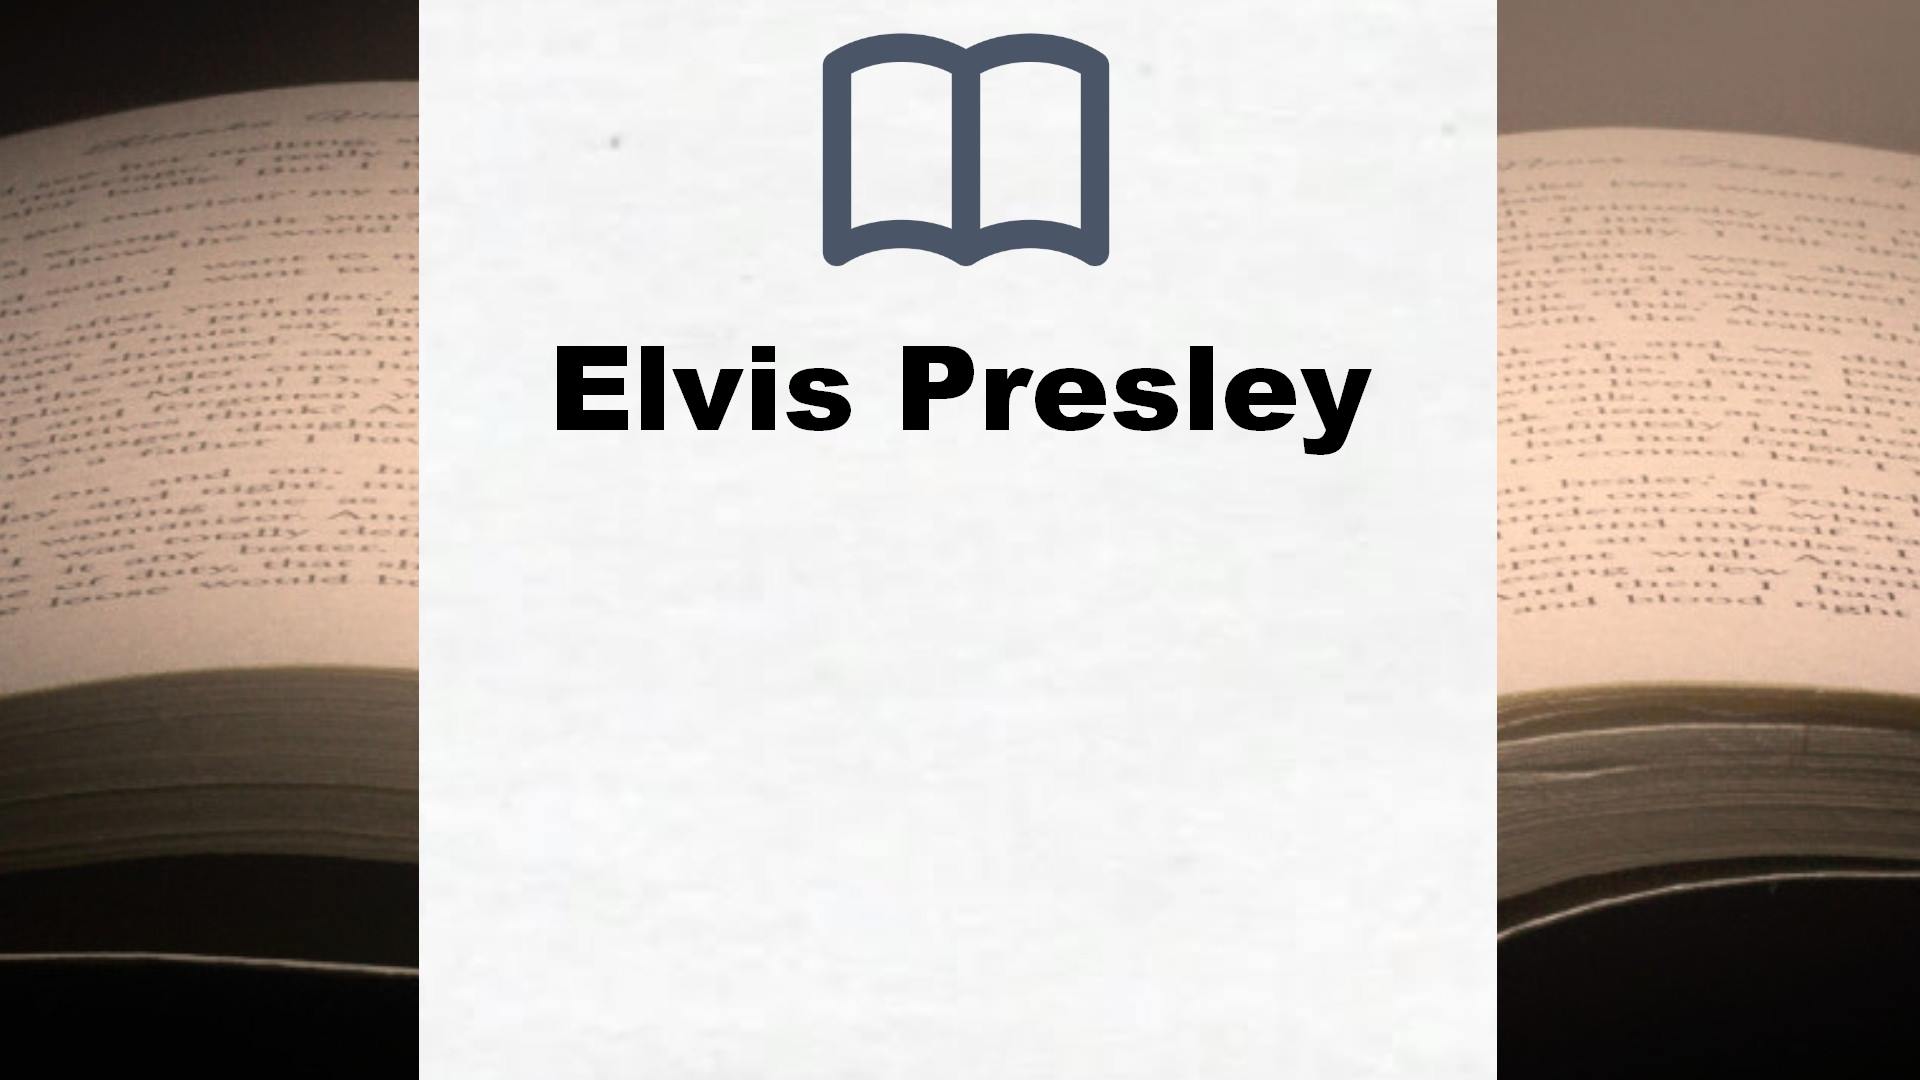 Bücher über Elvis Presley